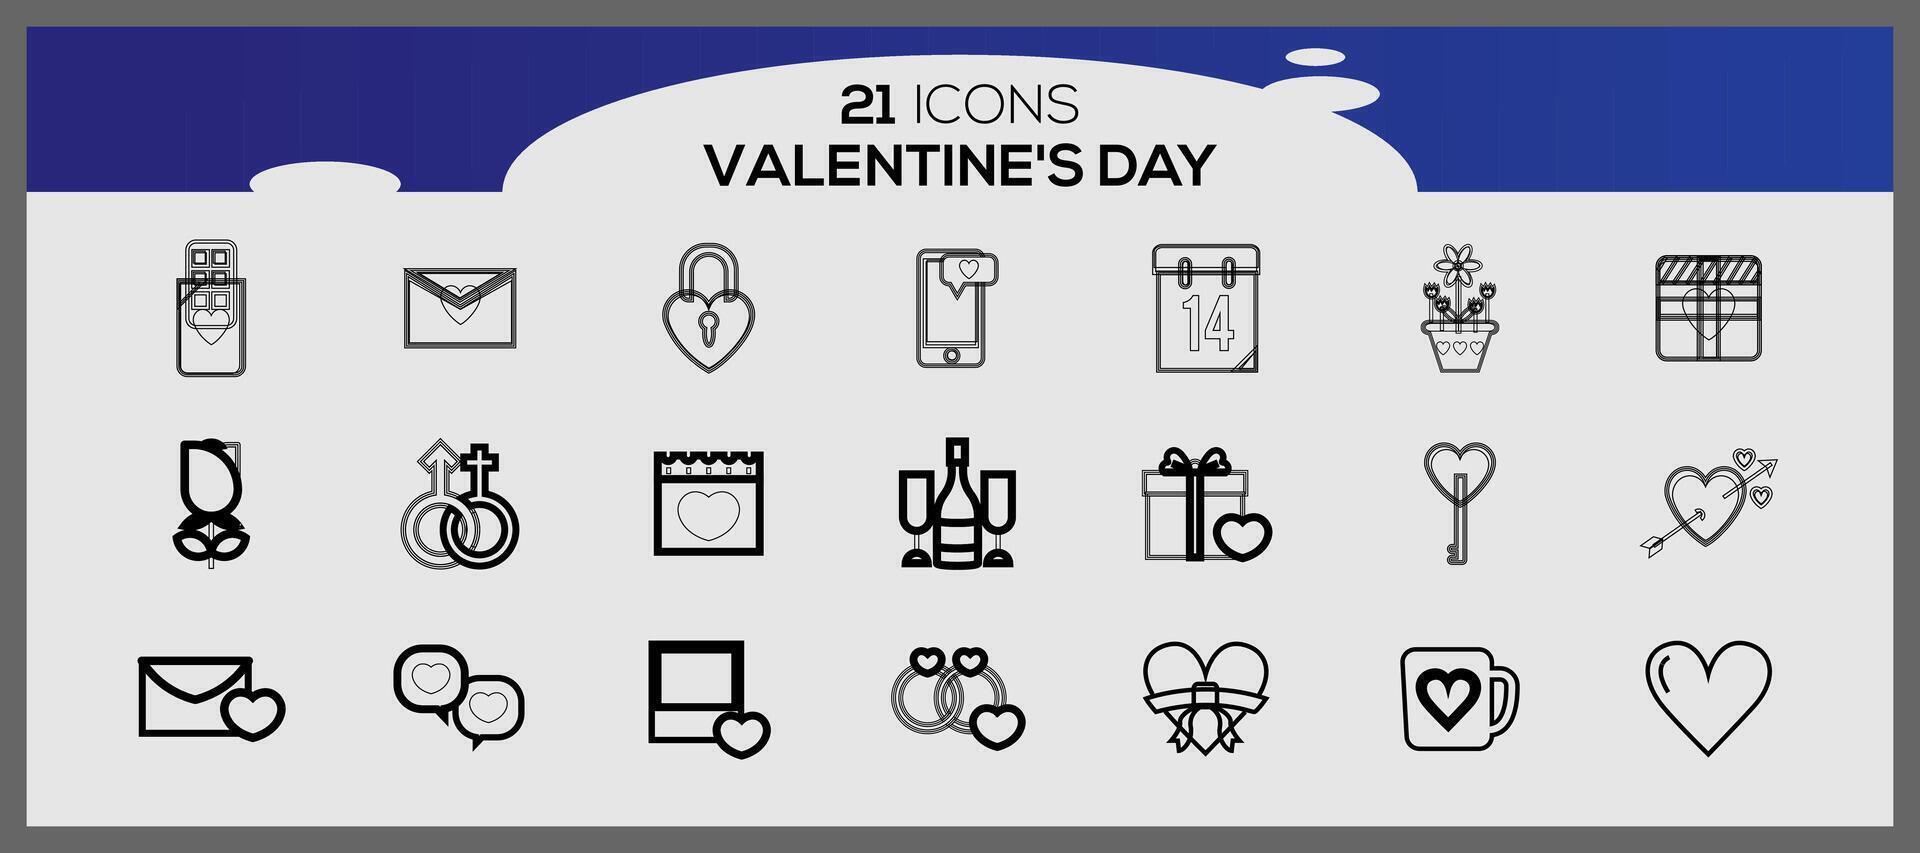 San Valentín día iconos colección de ilustrado San Valentín iconos vector